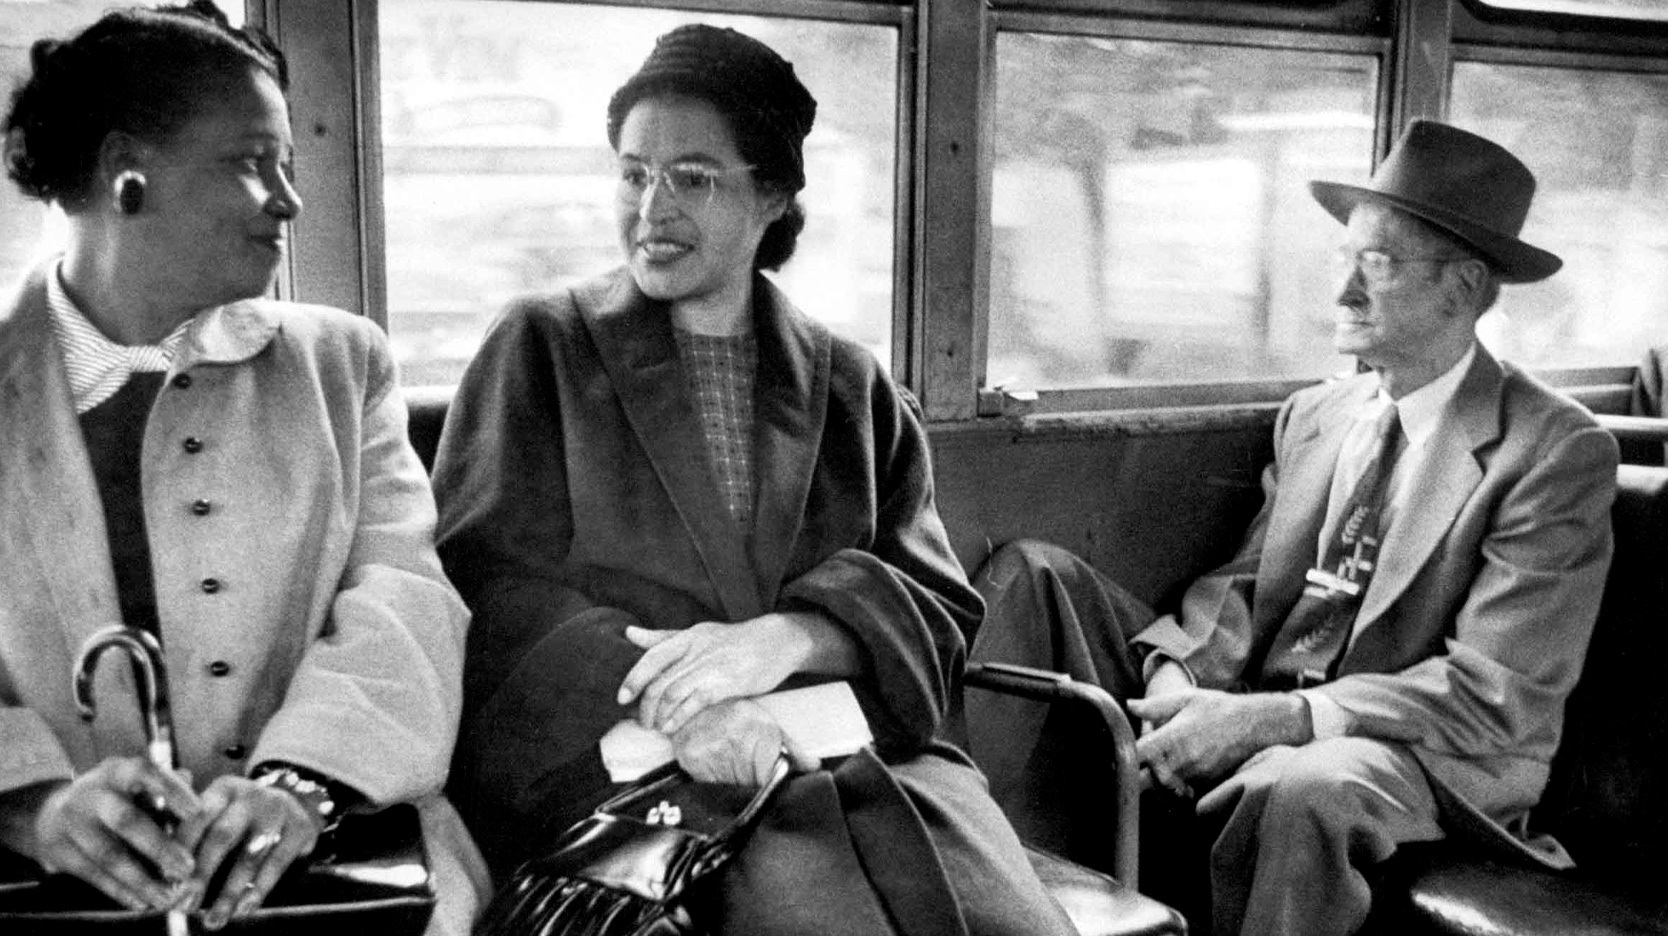 Rosa Parks riding bus